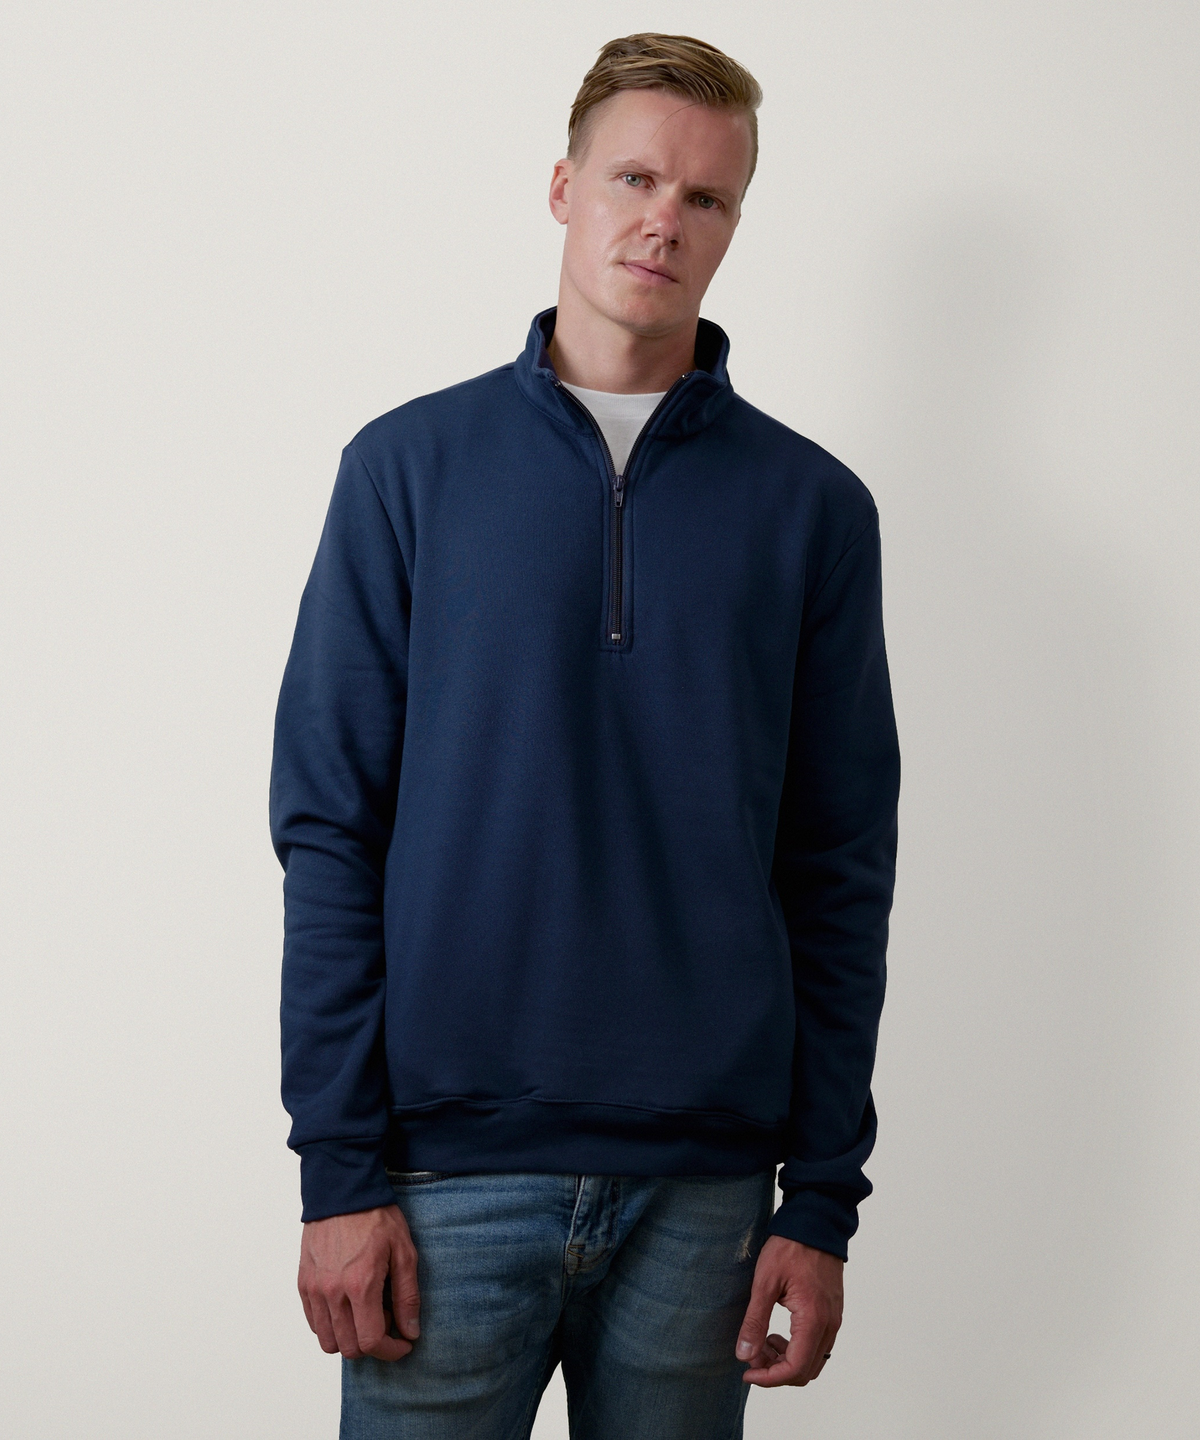 Quarter Zip Sweatshirt for Men (Navy)